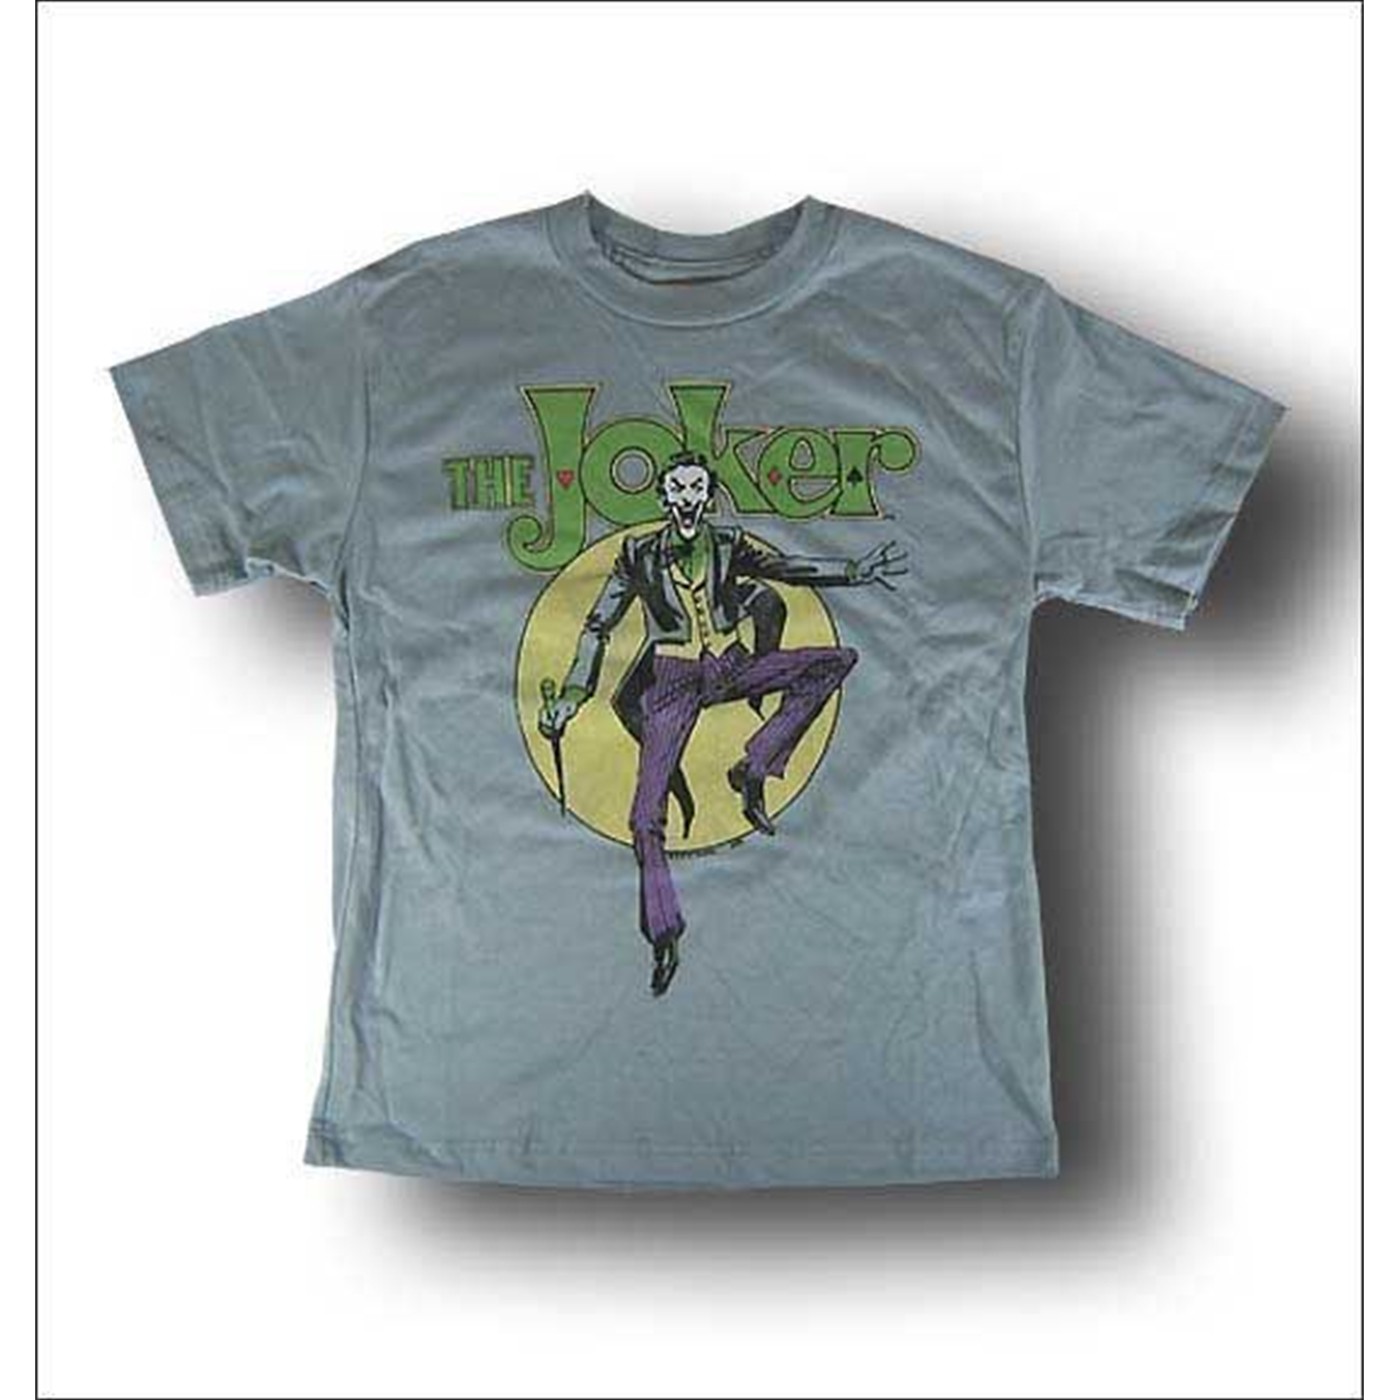 Joker Juvenile Psycho Dancer T-Shirt by Junk Food